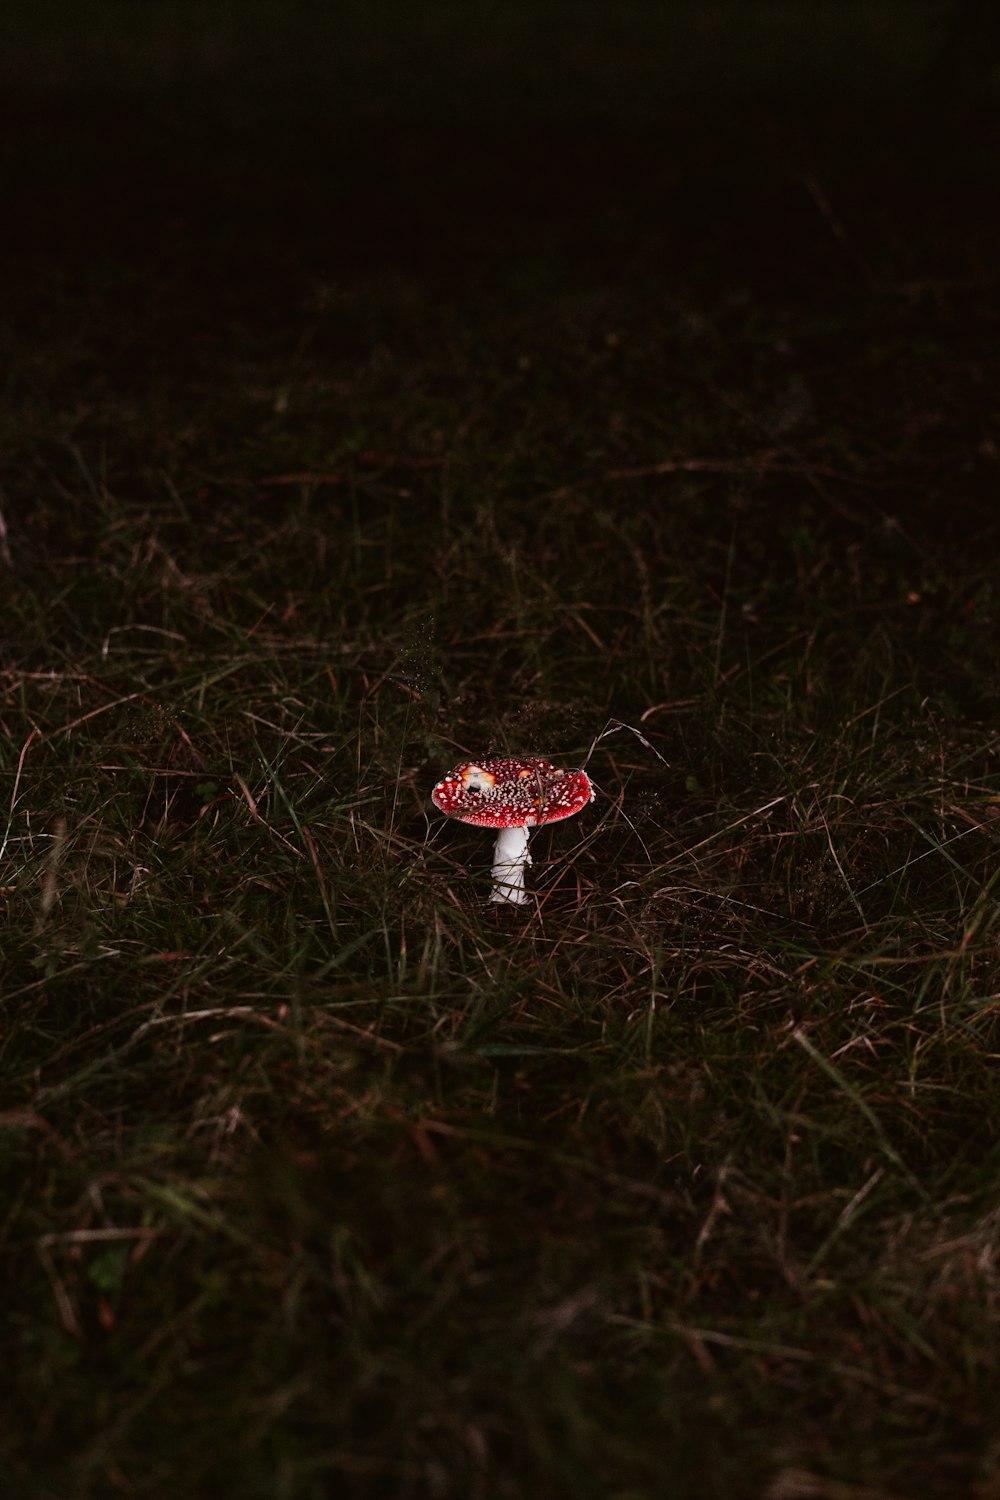 cogumelo vermelho e branco na grama verde